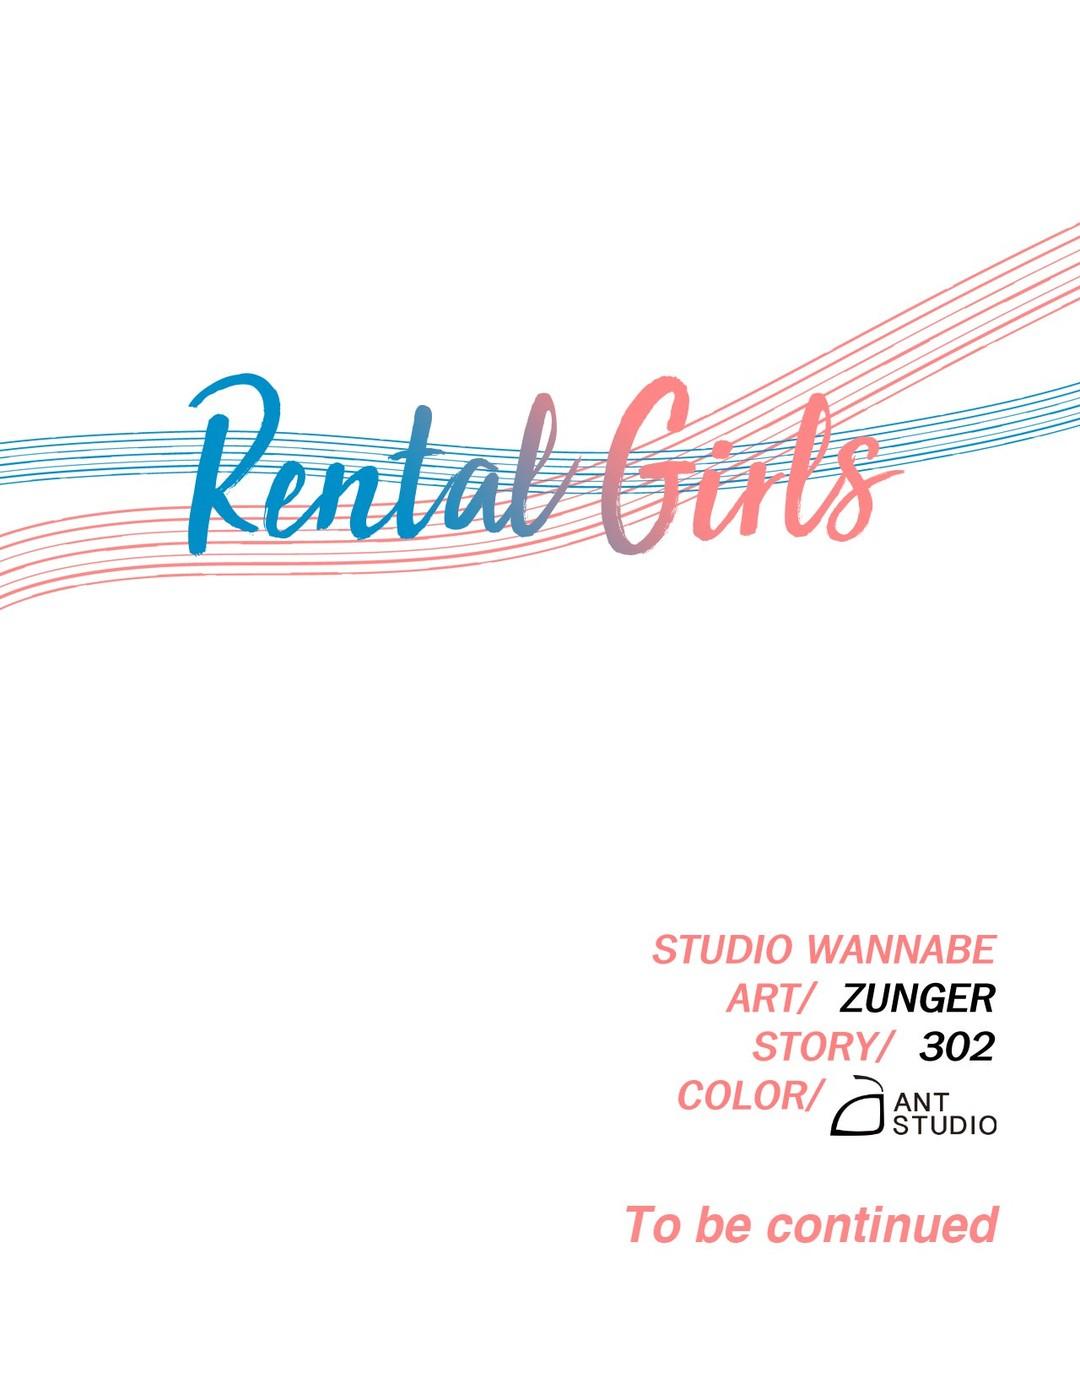 Rental Girls Ch 16 32